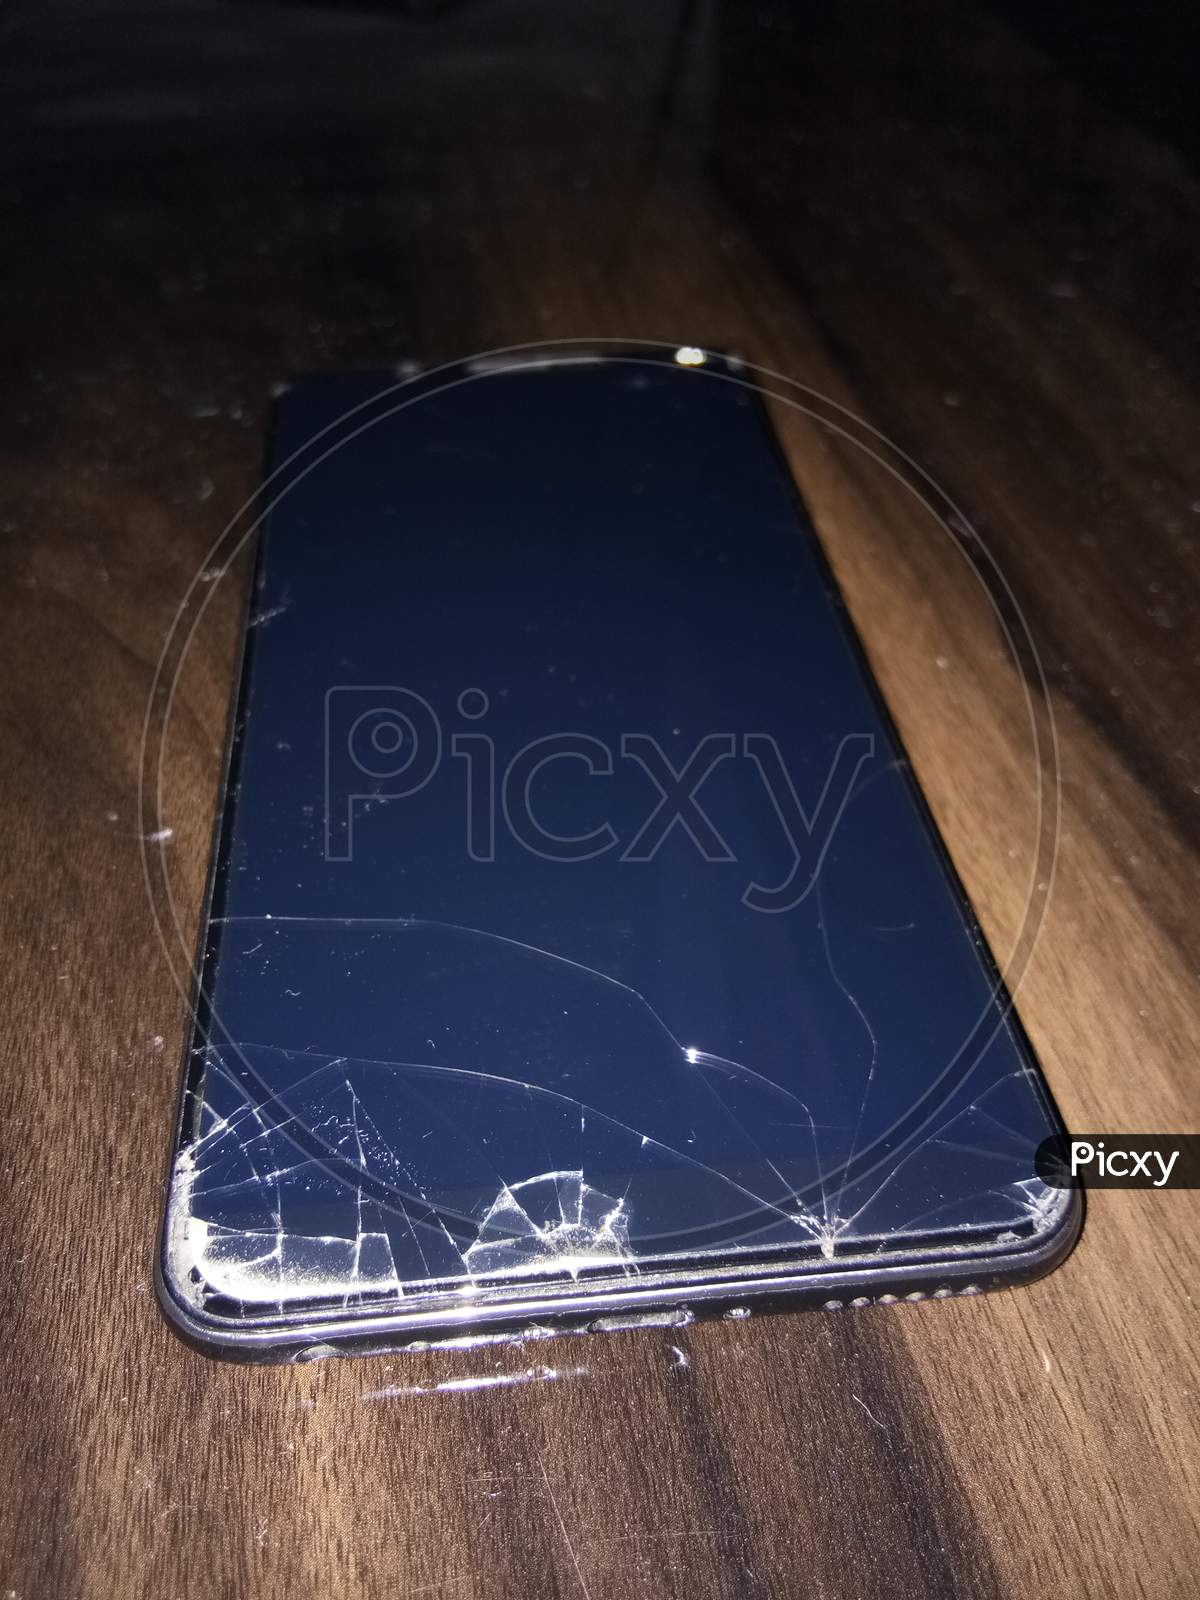 Broken phone display